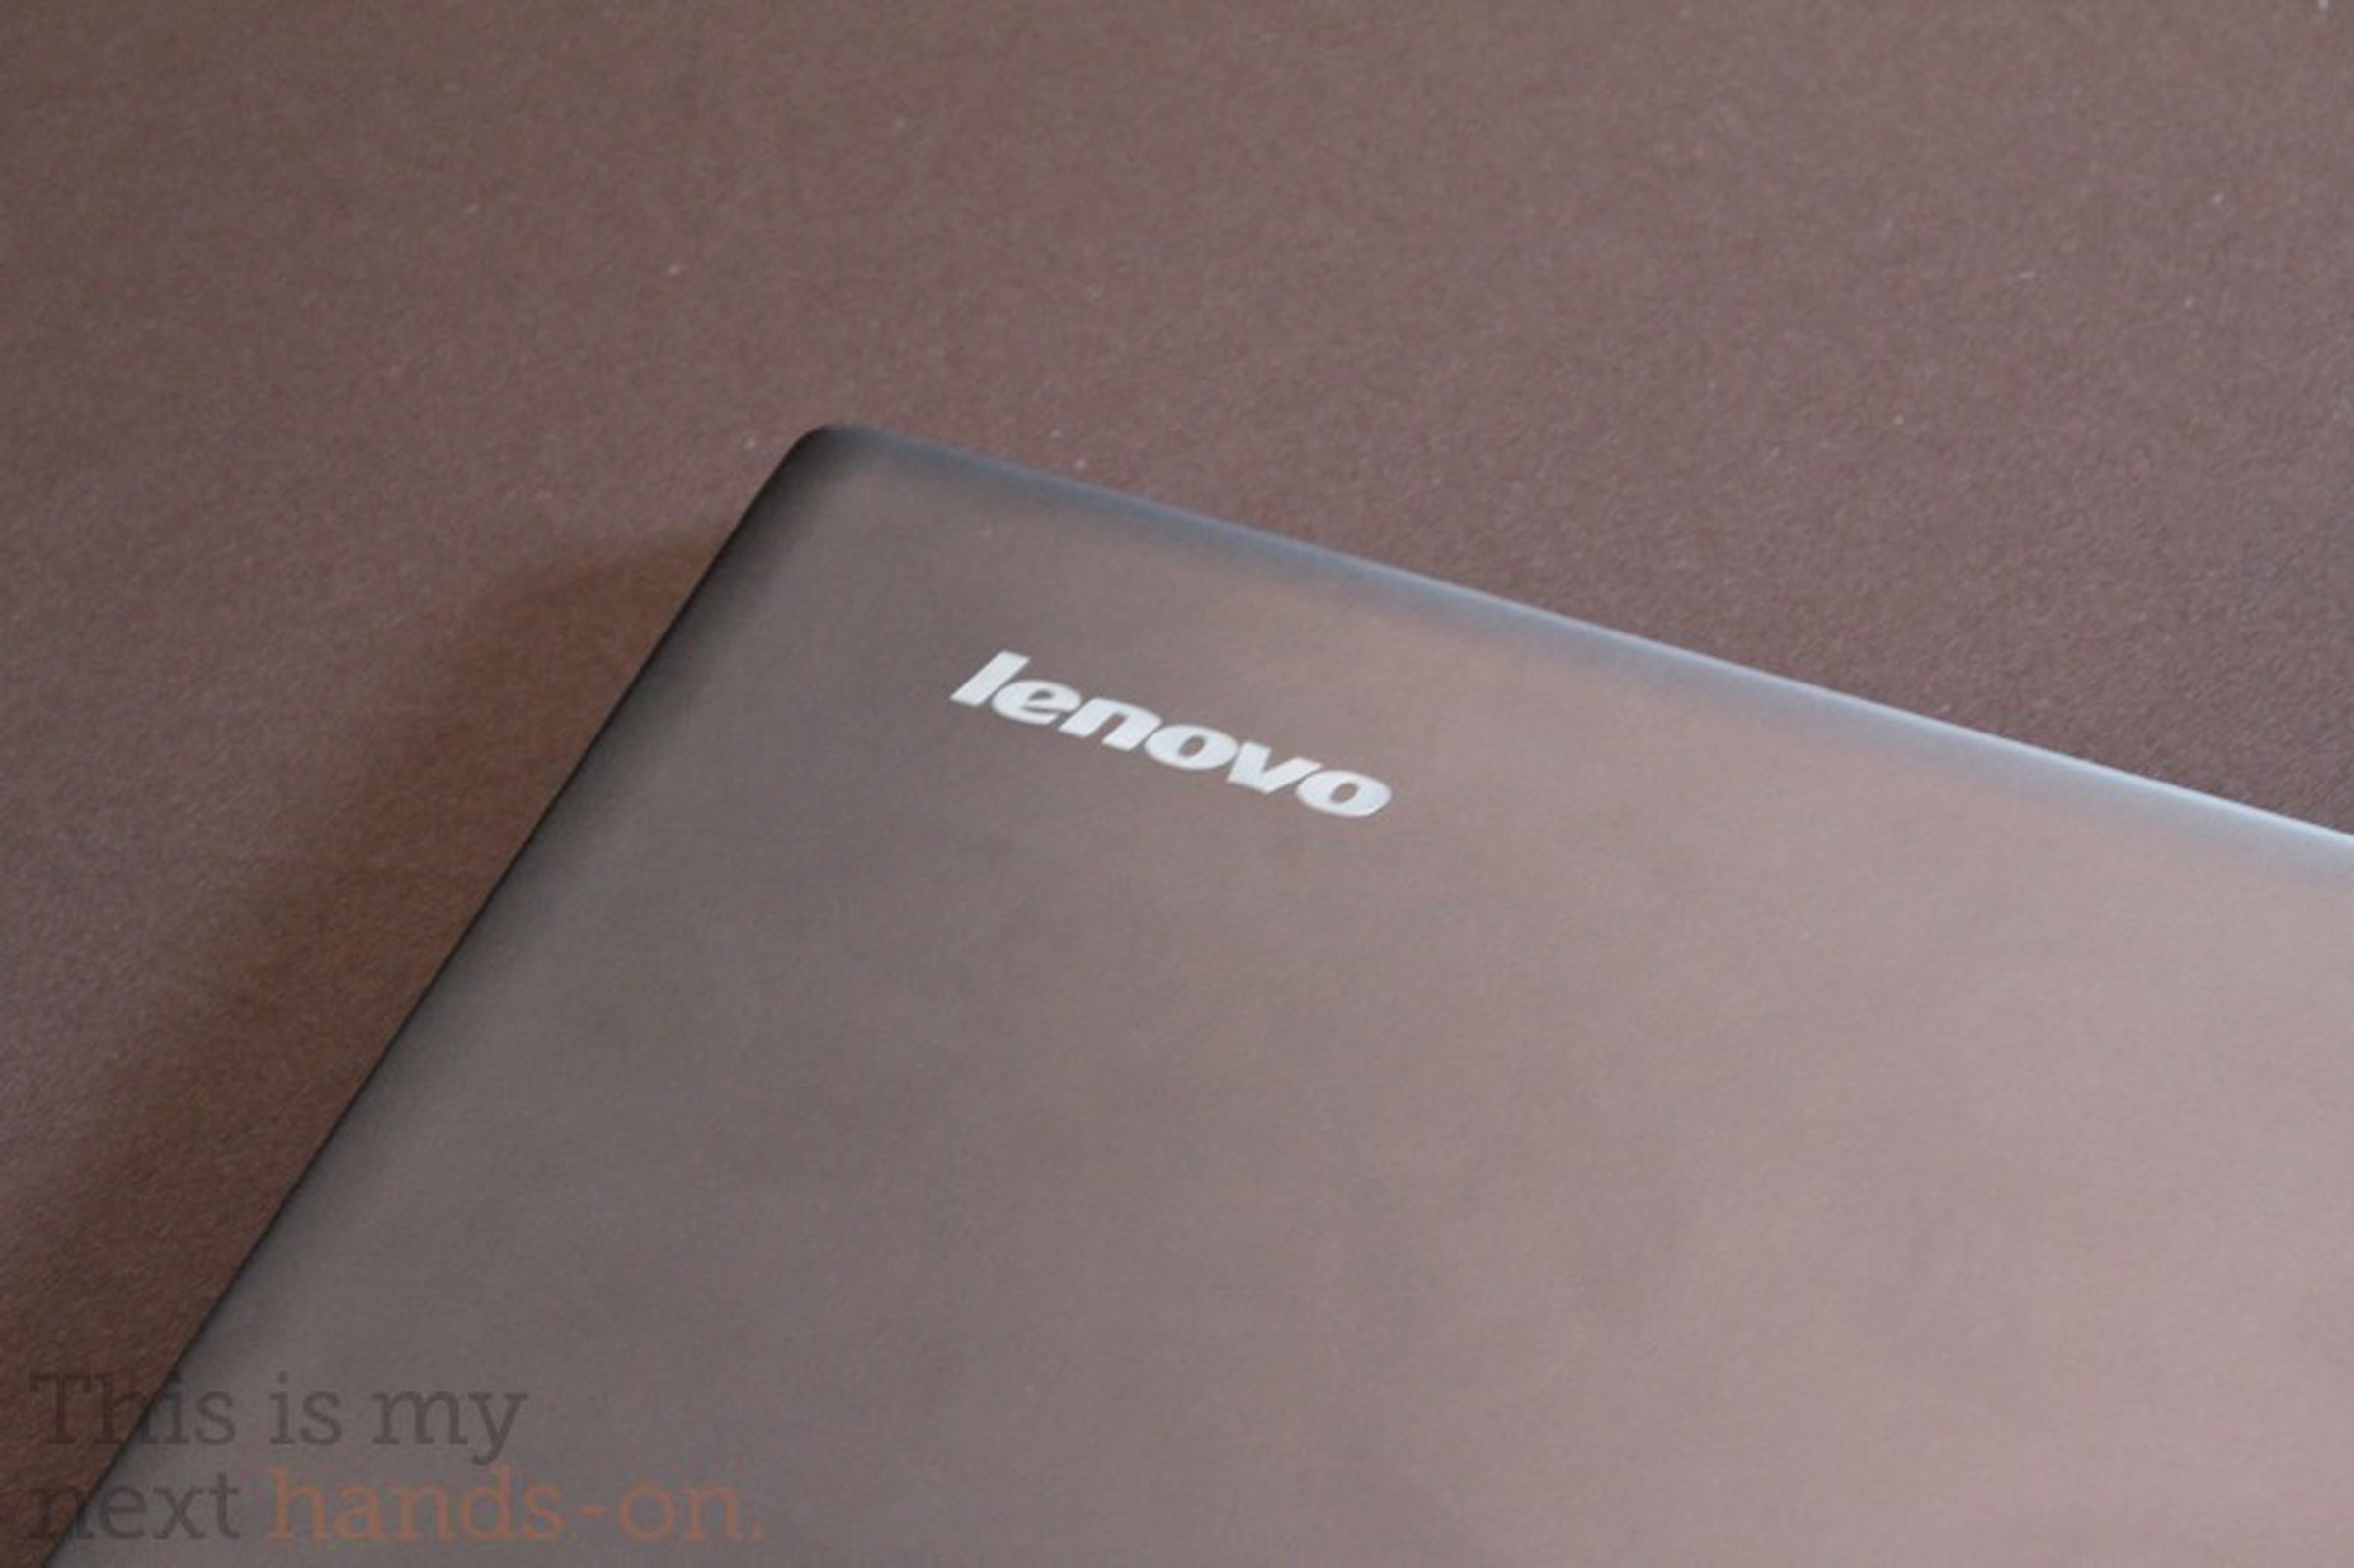 Lenovo IdeaPad U300s hands-on photos